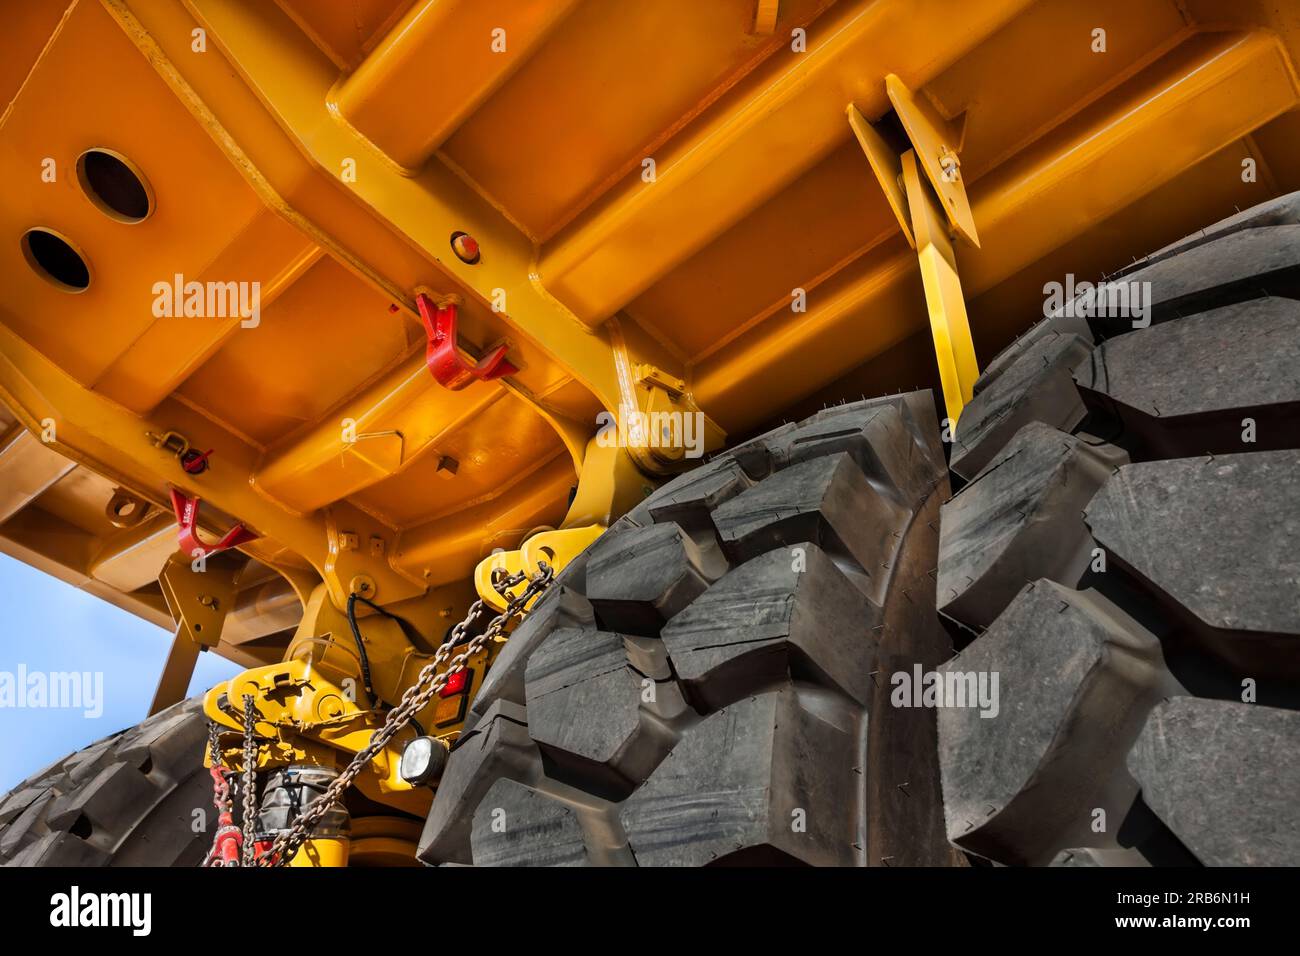 Überarbeitung der Aufhängung, Doppelachse unter einem riesigen, brandneuen gelben Bergbaufahrzeug, oben auf einem Anhänger, der in einer Diamantenmine geliefert wurde Stockfoto